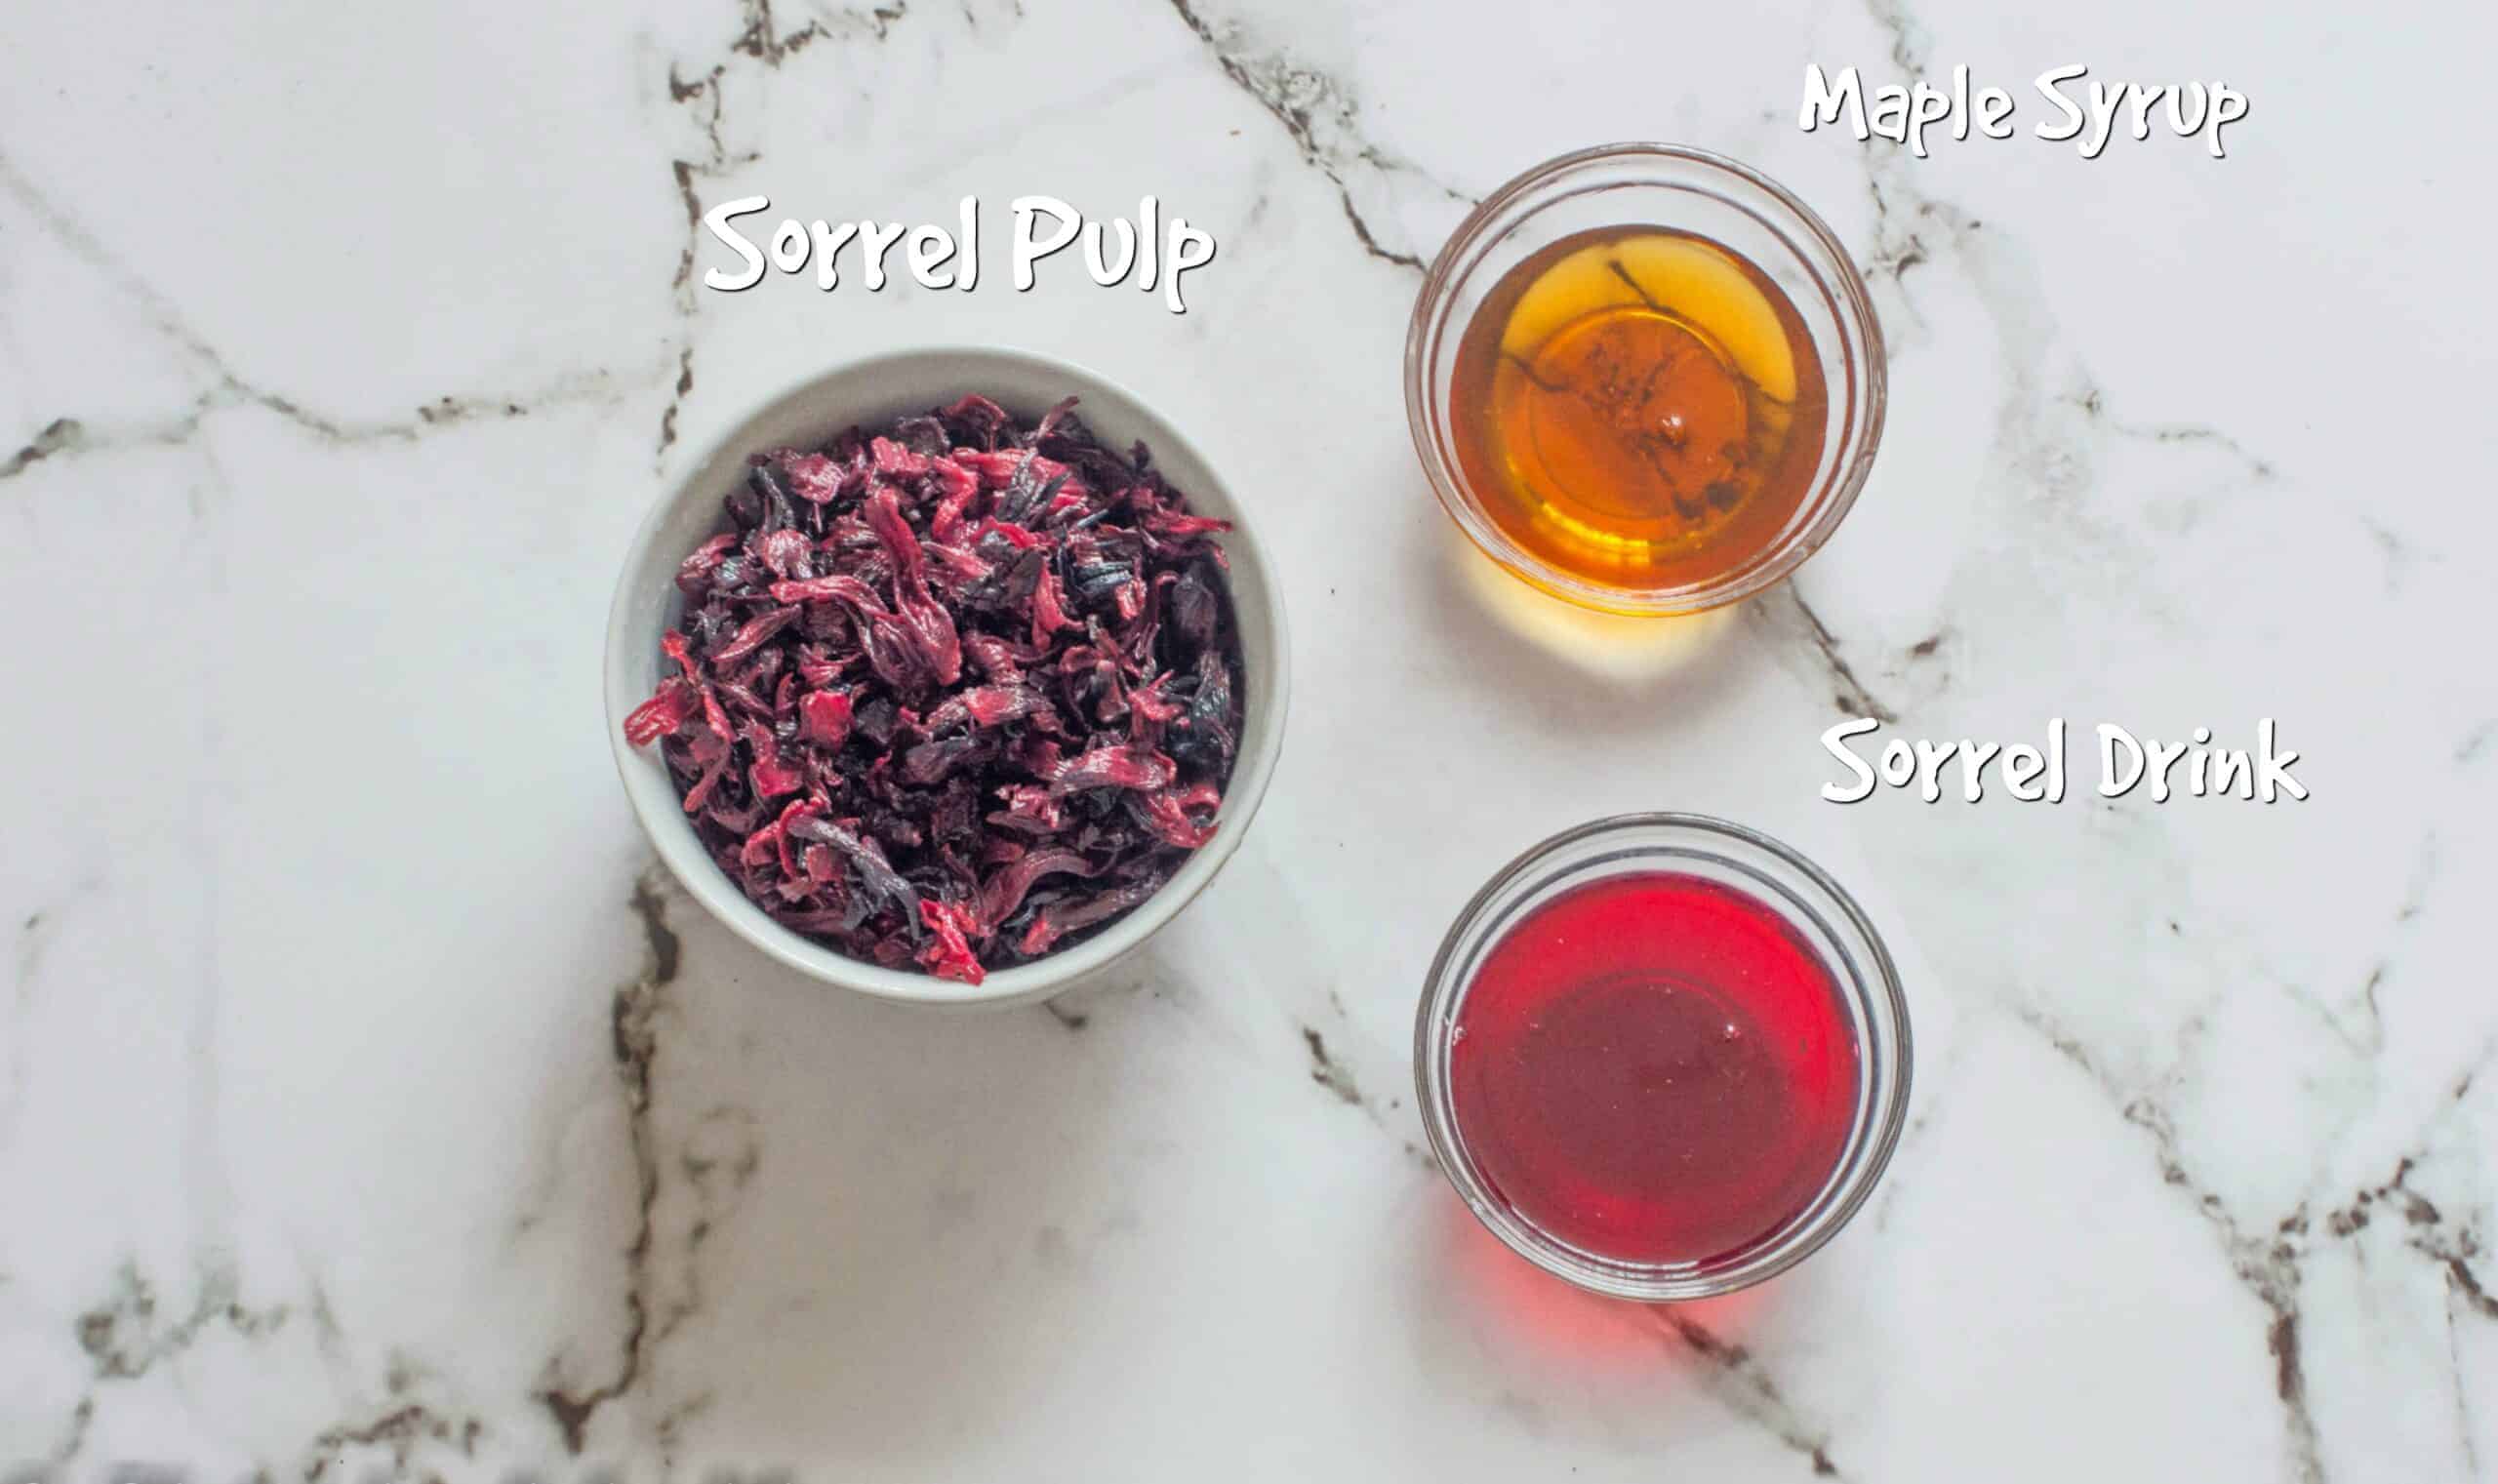 ingredients for sorrel jam